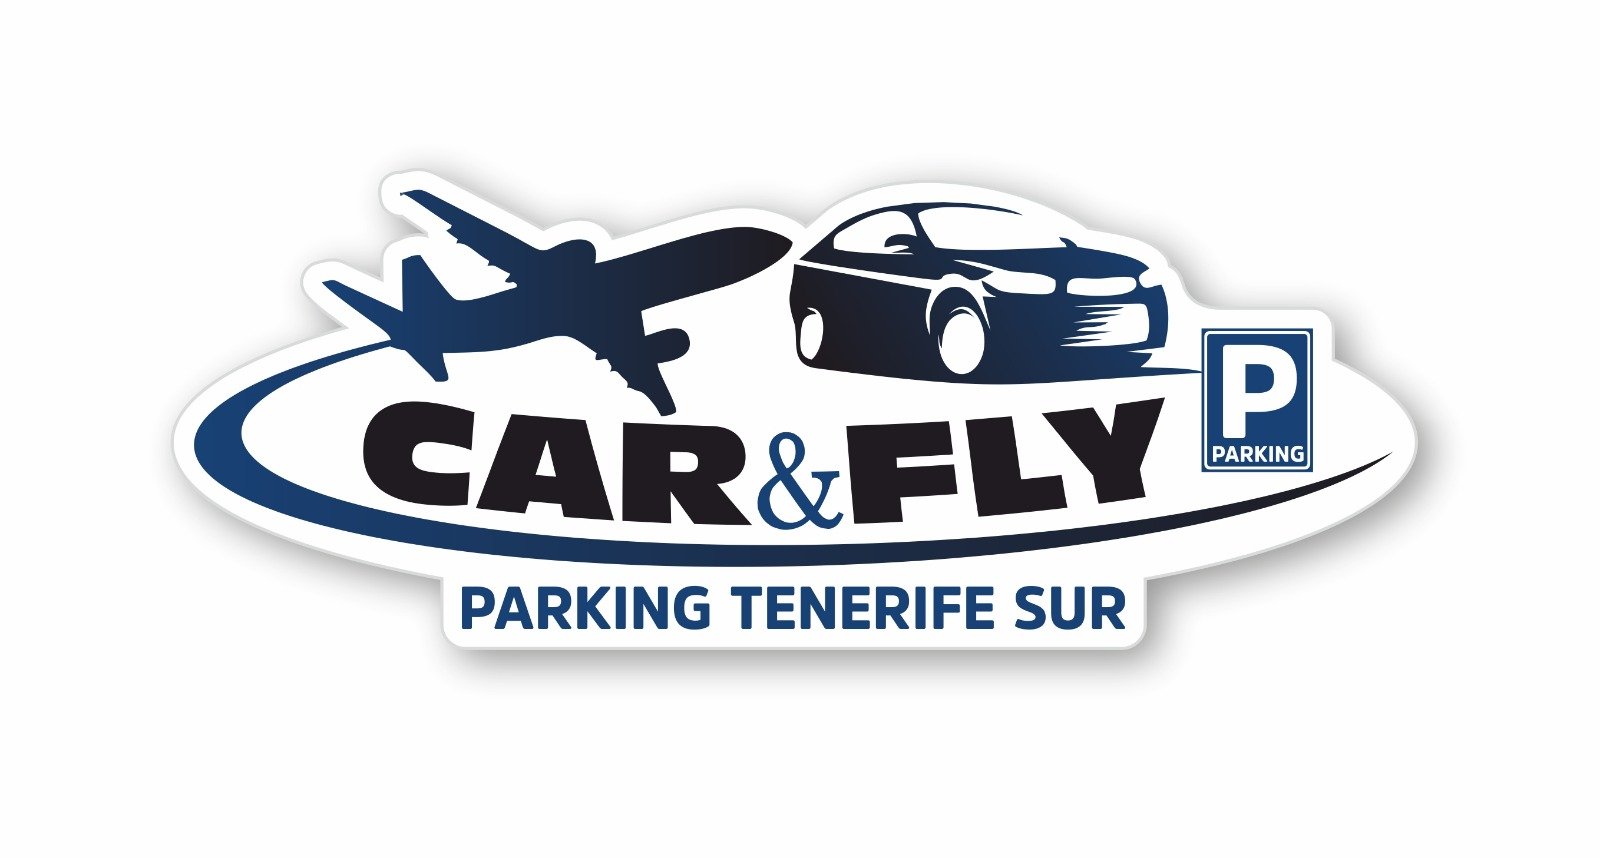 Servicio de parking en Aeropuertos de Tenerife Norte y Sur, vigilados y asegurados las 24H servicio VIP a precios low cost, AHORRA el 60% con nosotros.